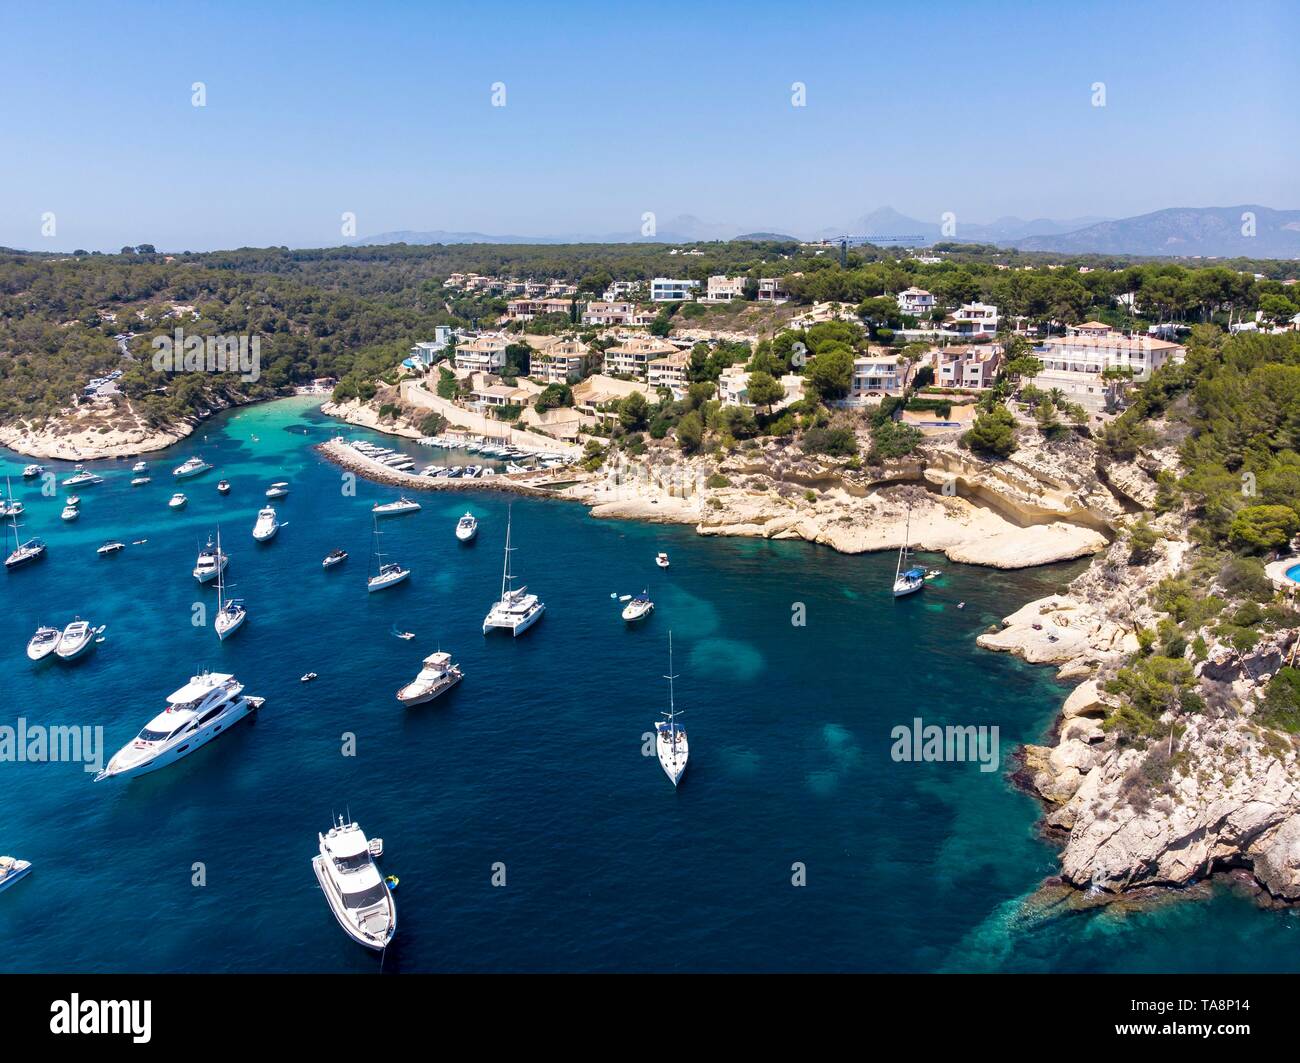 Vue aérienne, vue sur la baie de trois doigts Portals Vells, Majorque, Îles Baléares, Espagne Banque D'Images